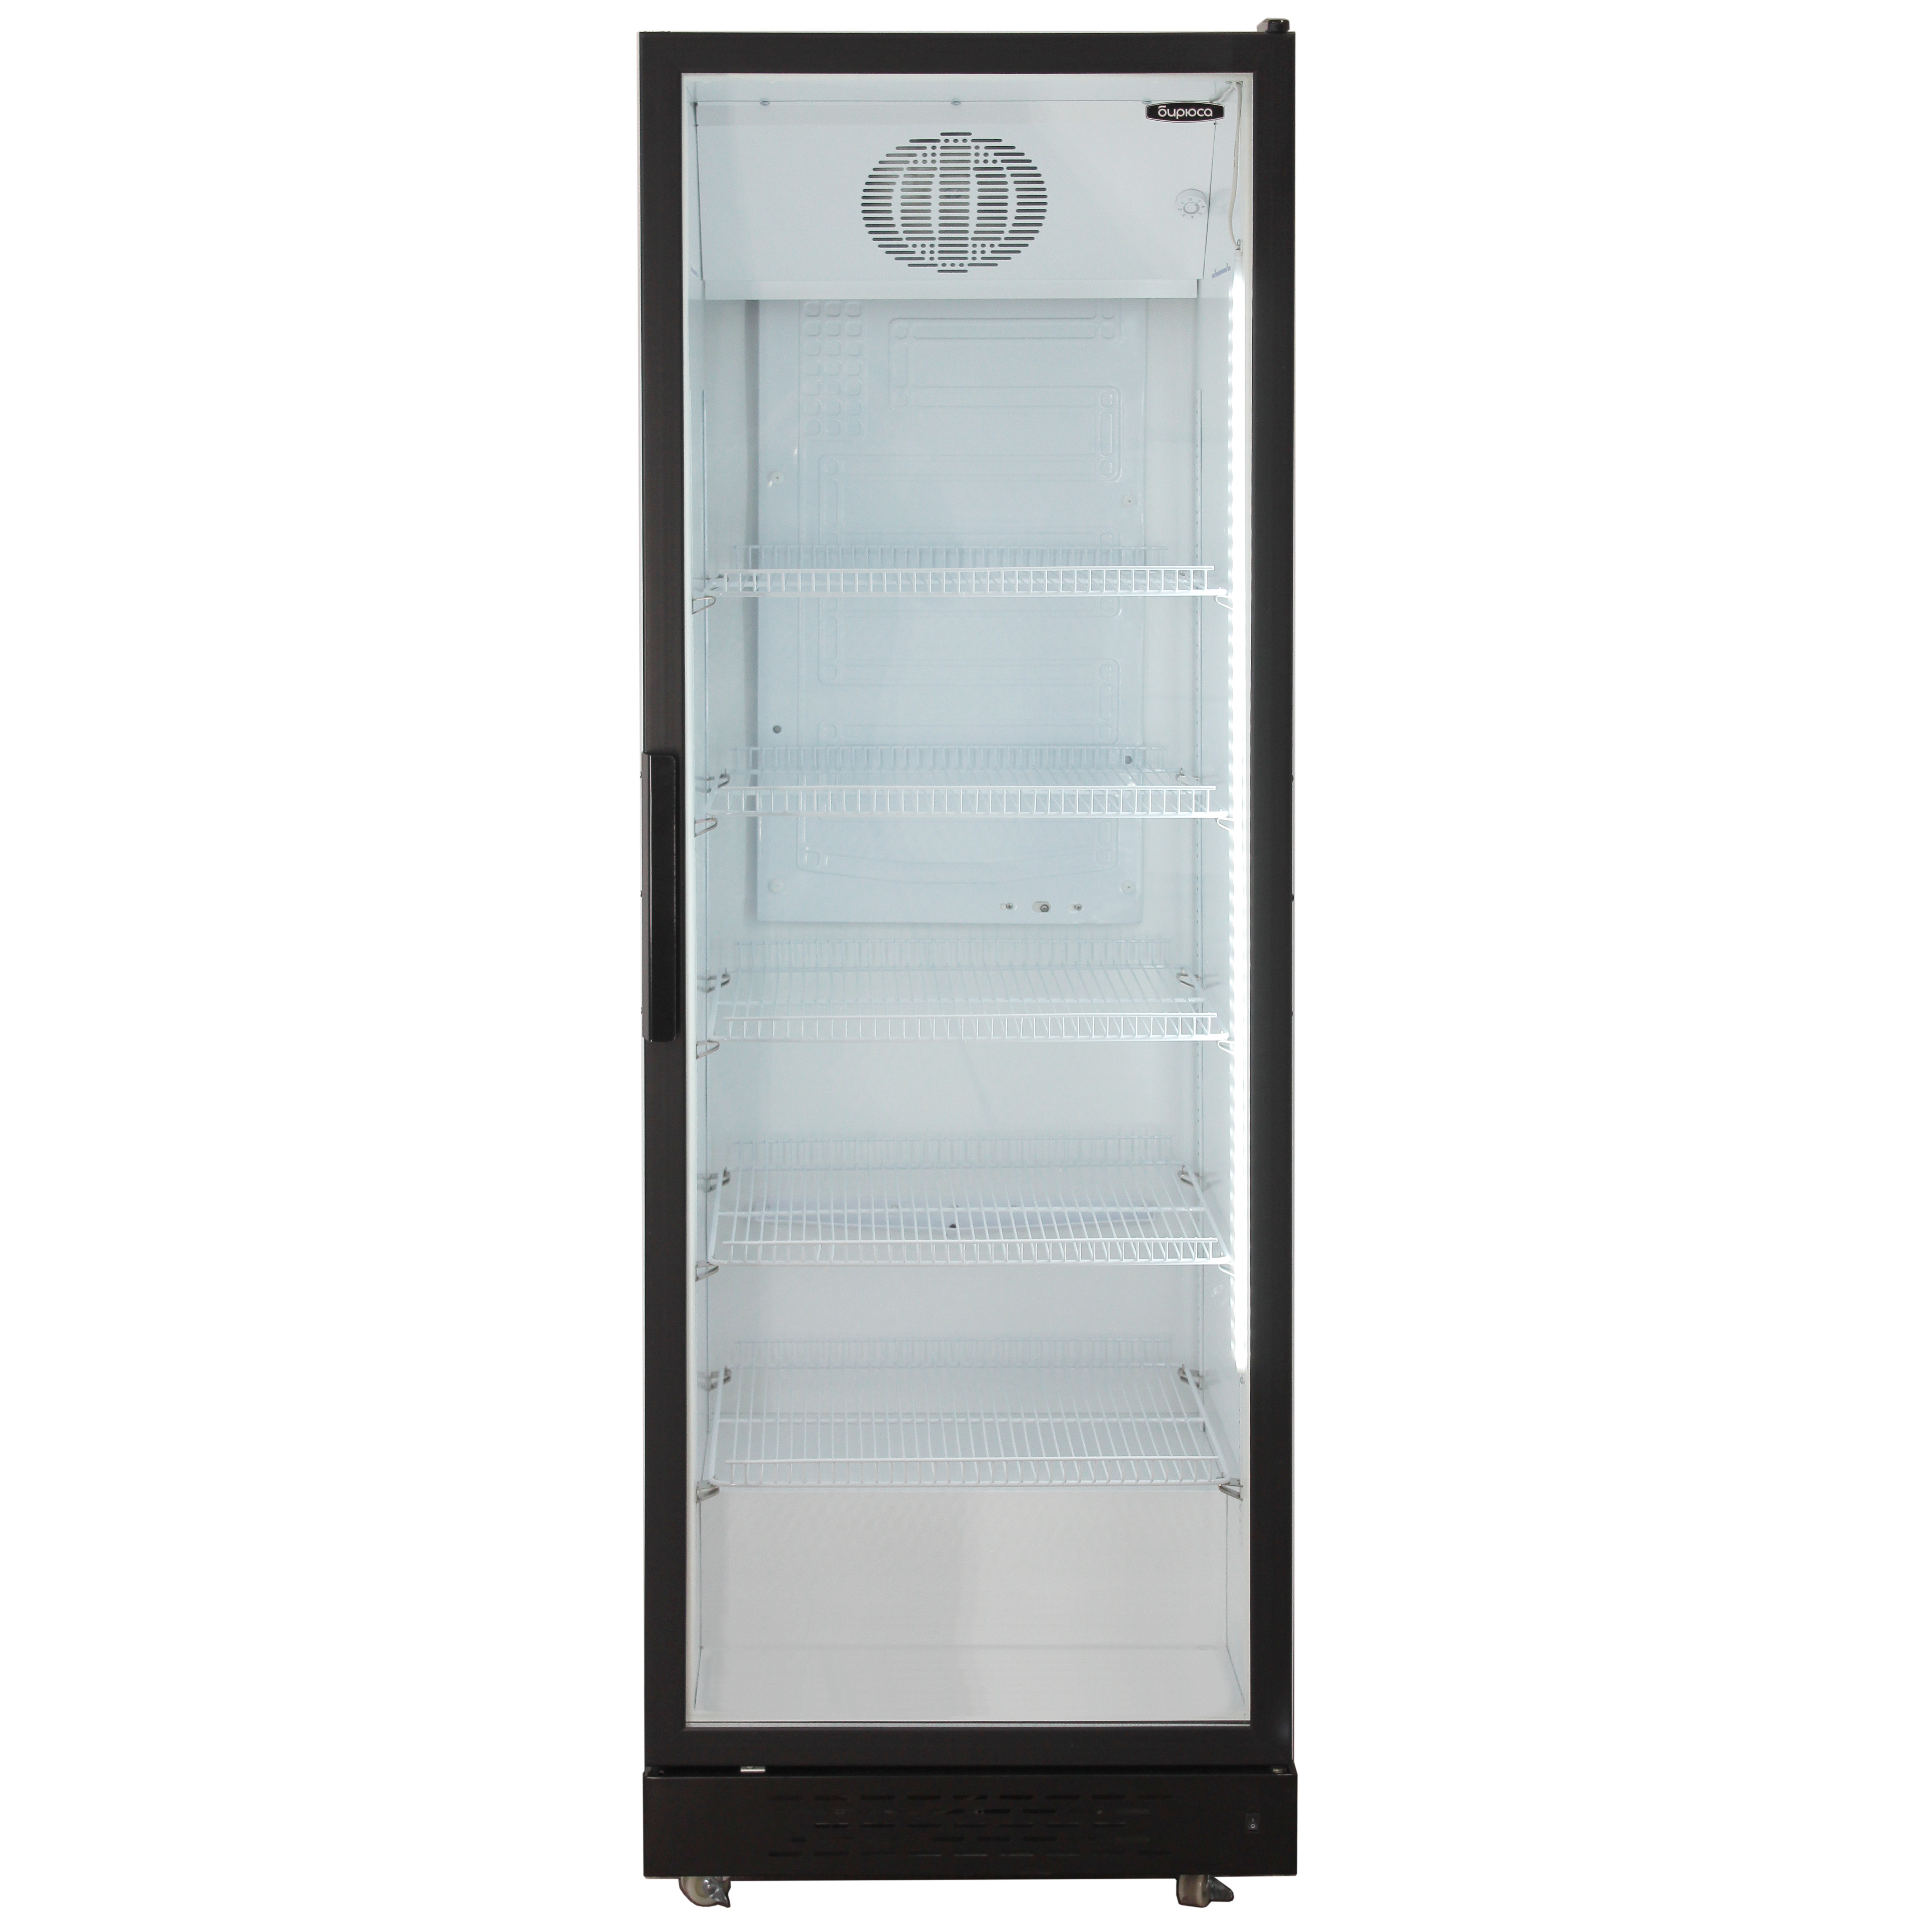 Холодильная витрина Бирюса Б-B500 холодильная витрина бирюса 310р 310 л белая